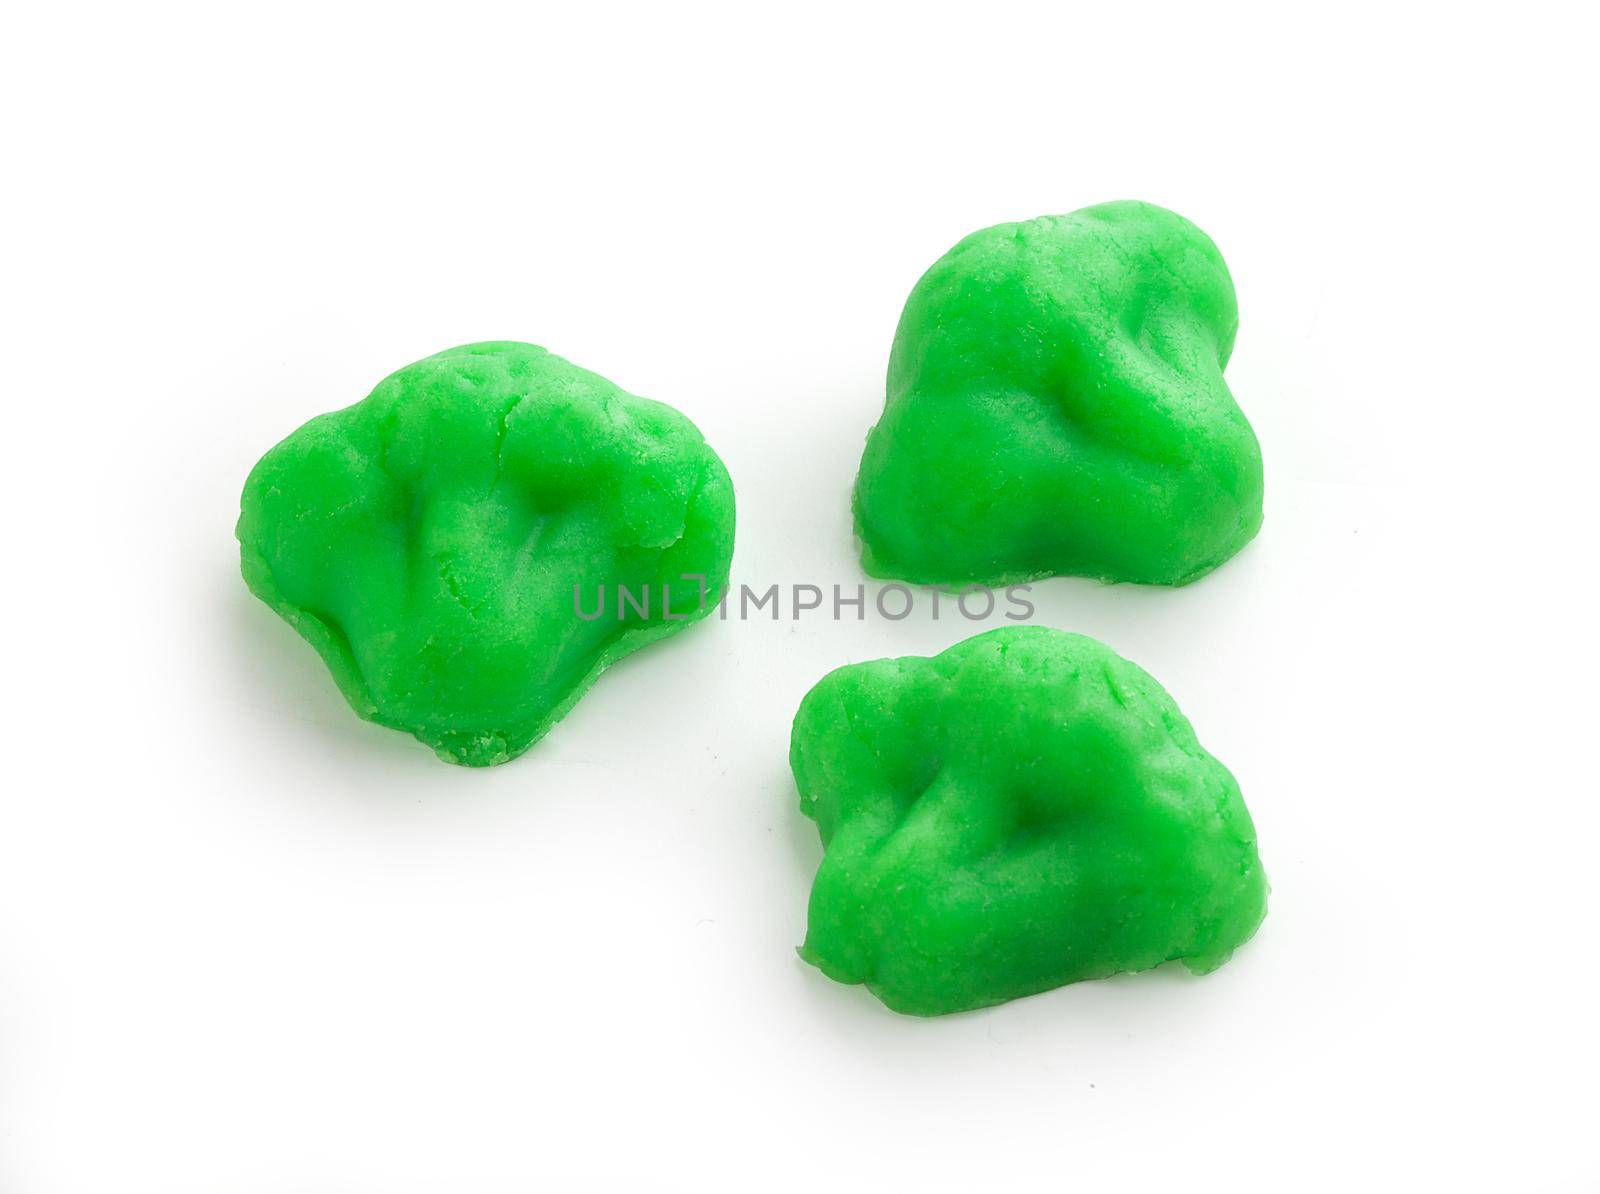 Green plasticine broccoli by Angorius